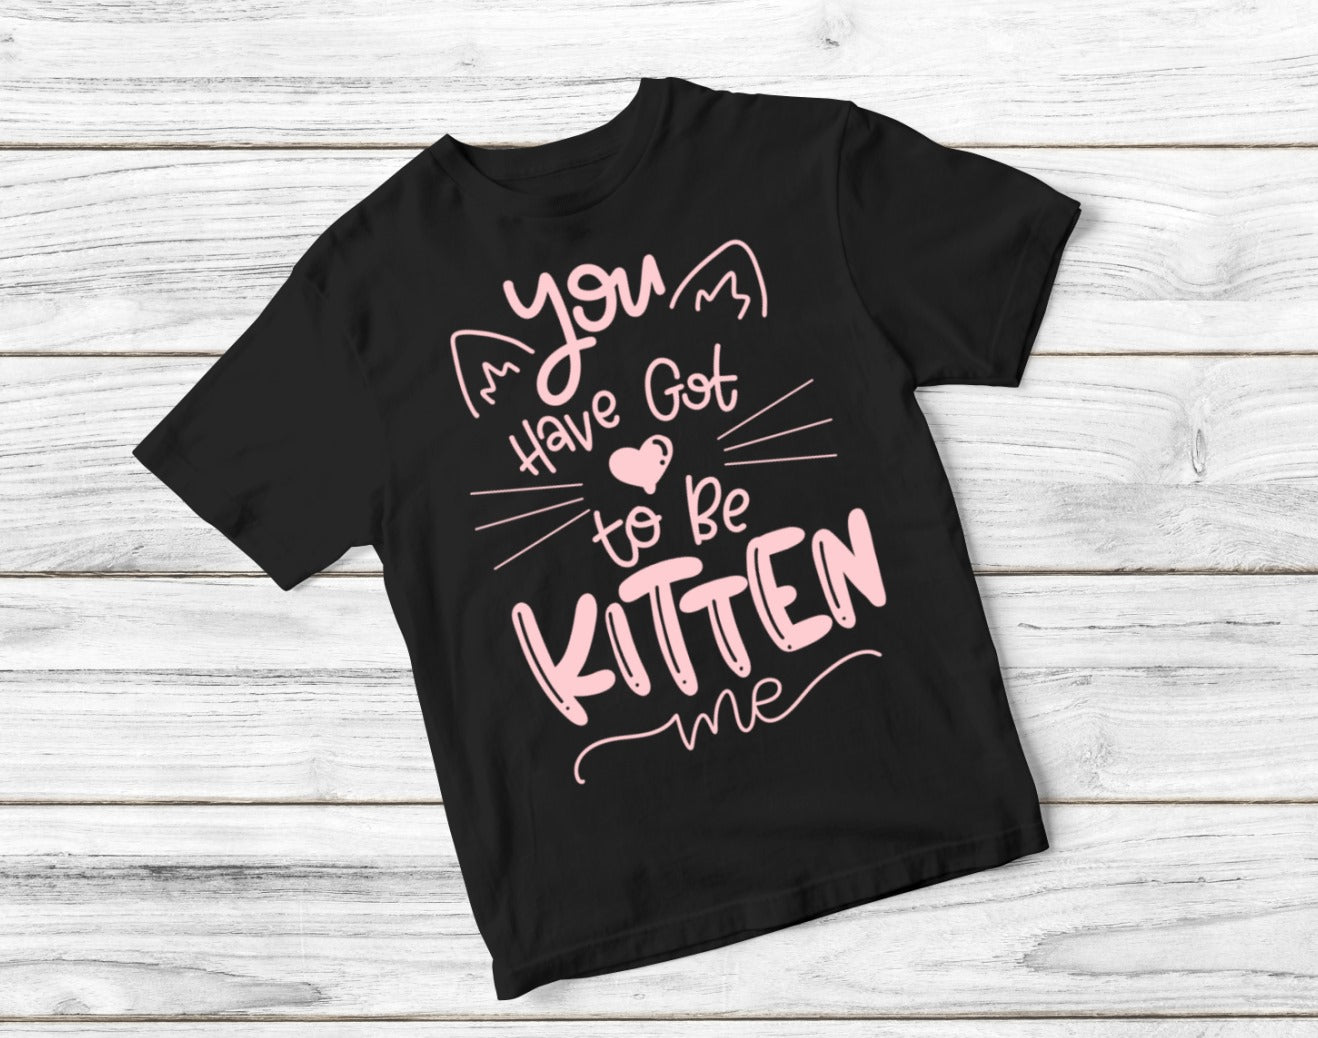 Kitten Me Design